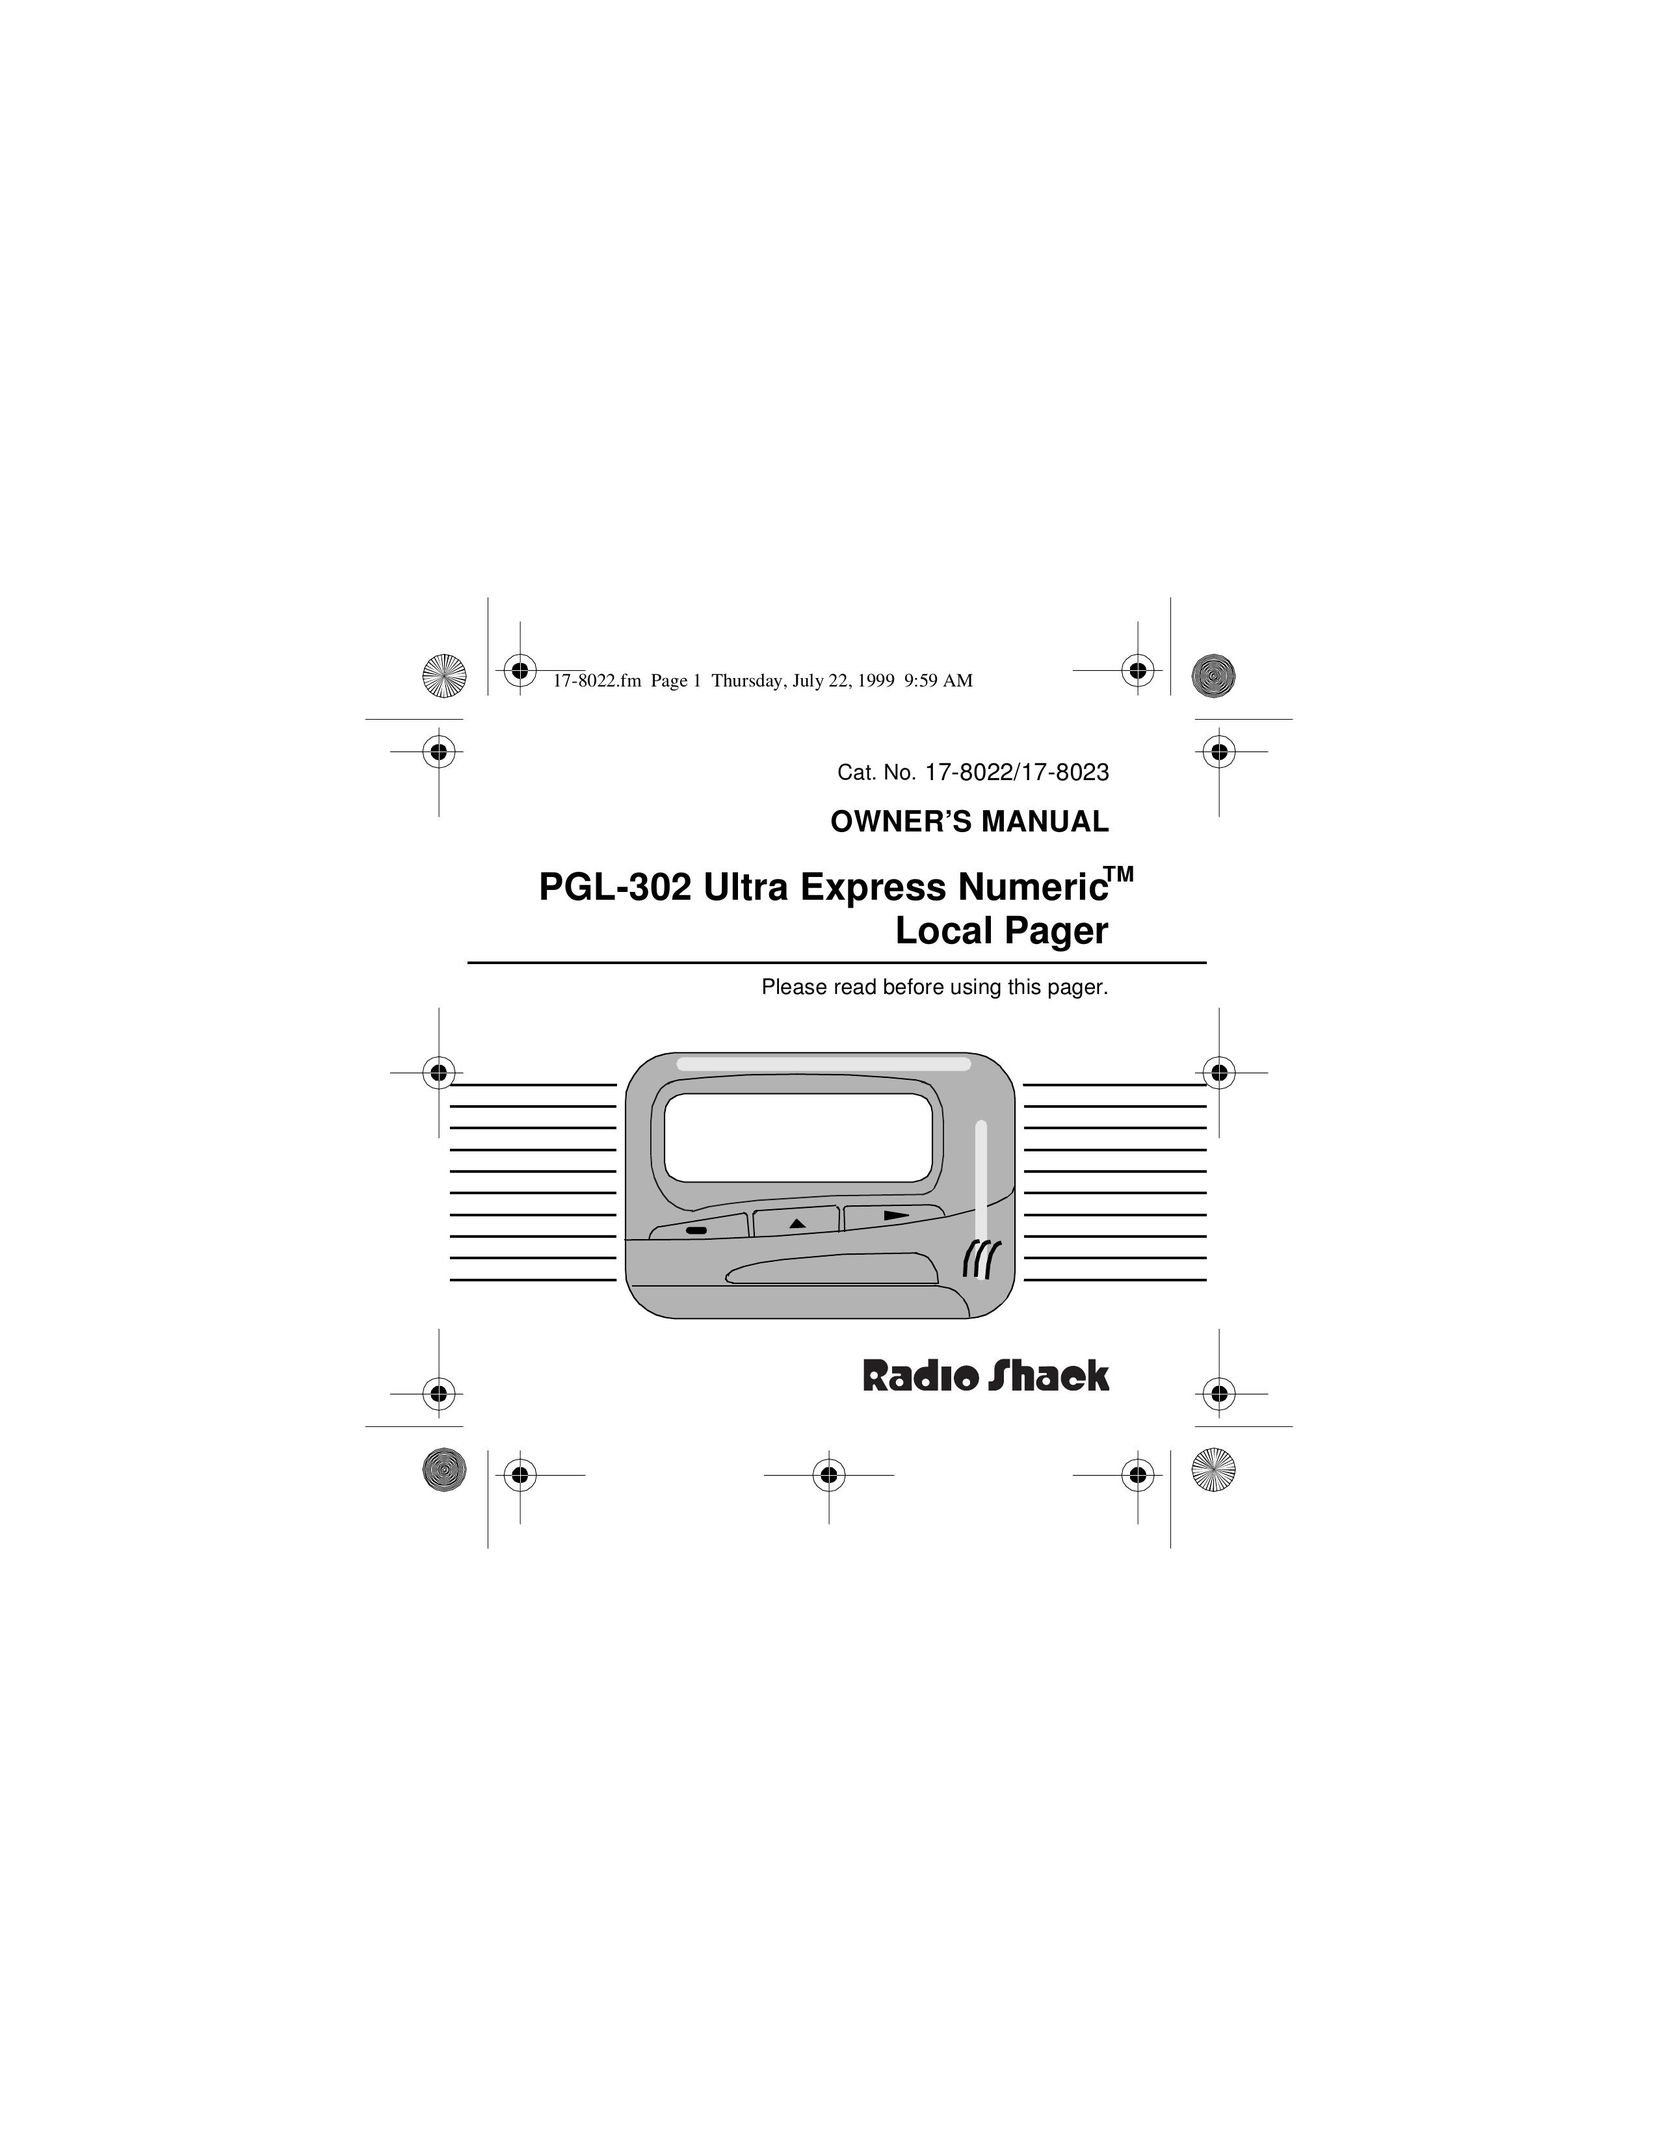 Radio Shack PGL-302 Pager User Manual